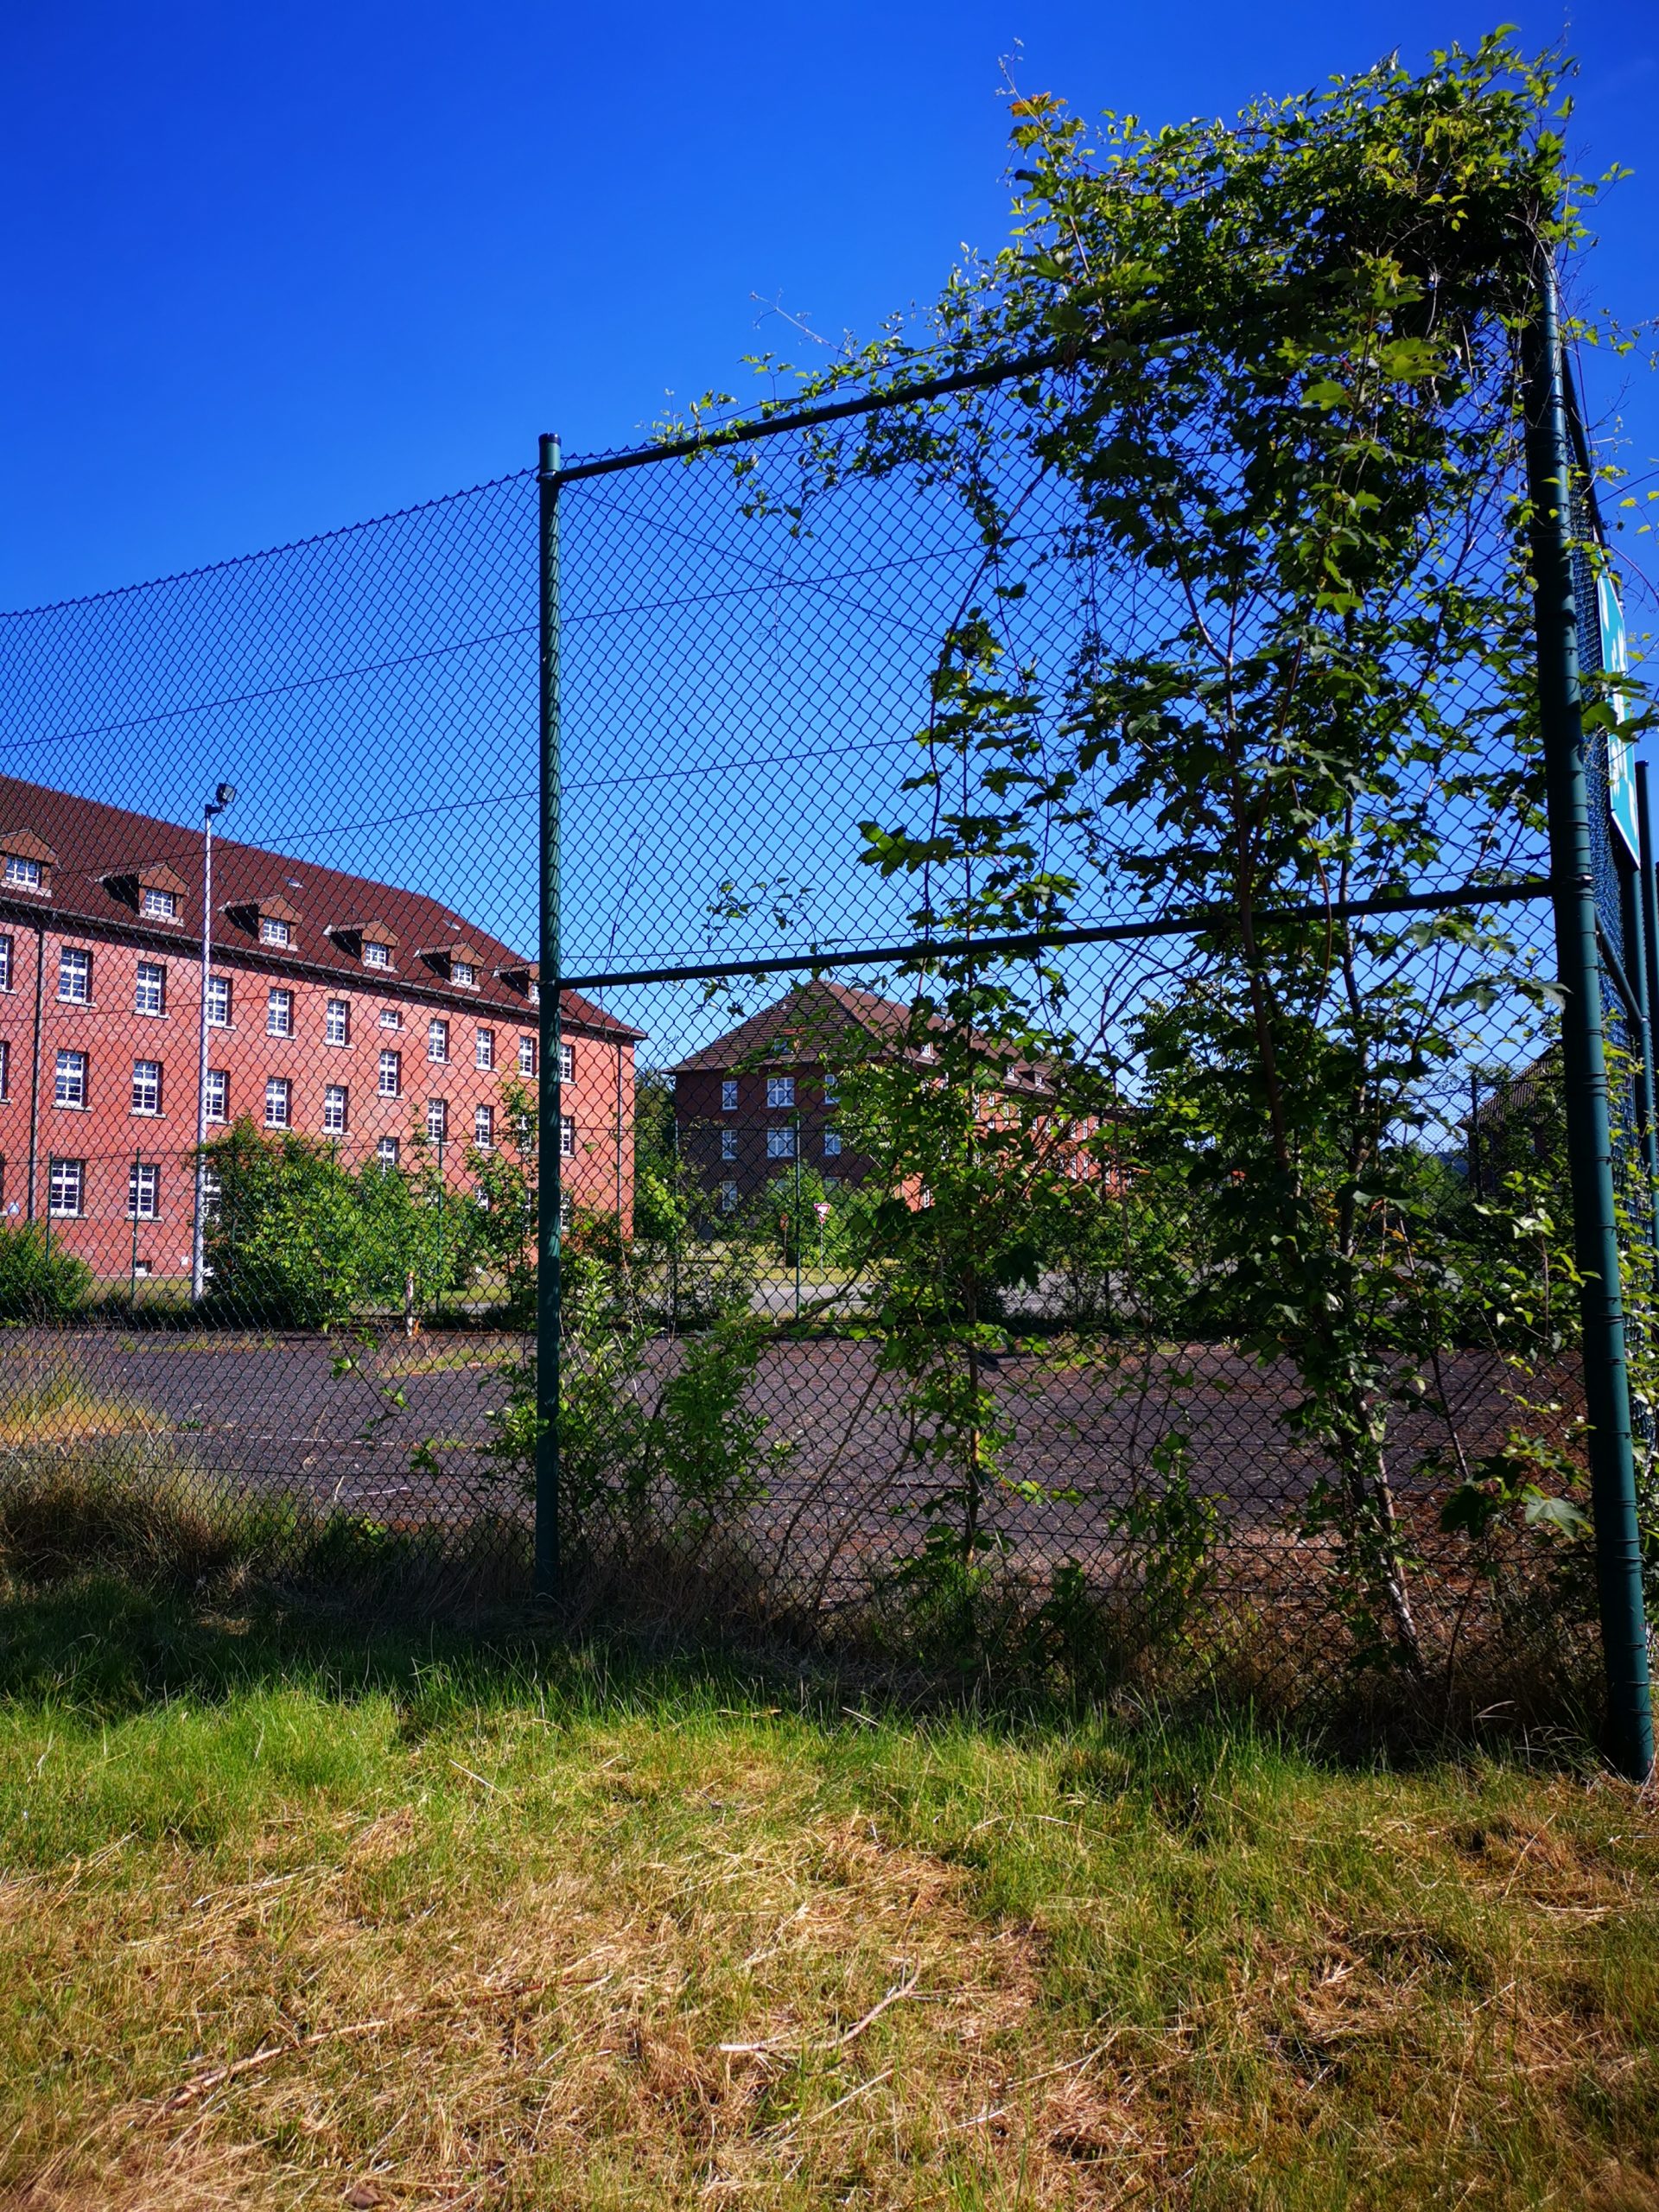 {:gb}Transurban_ sportsground on barracks{:}{:de}Transurban_ Sportplatz auf dem Kasernengelände{:}